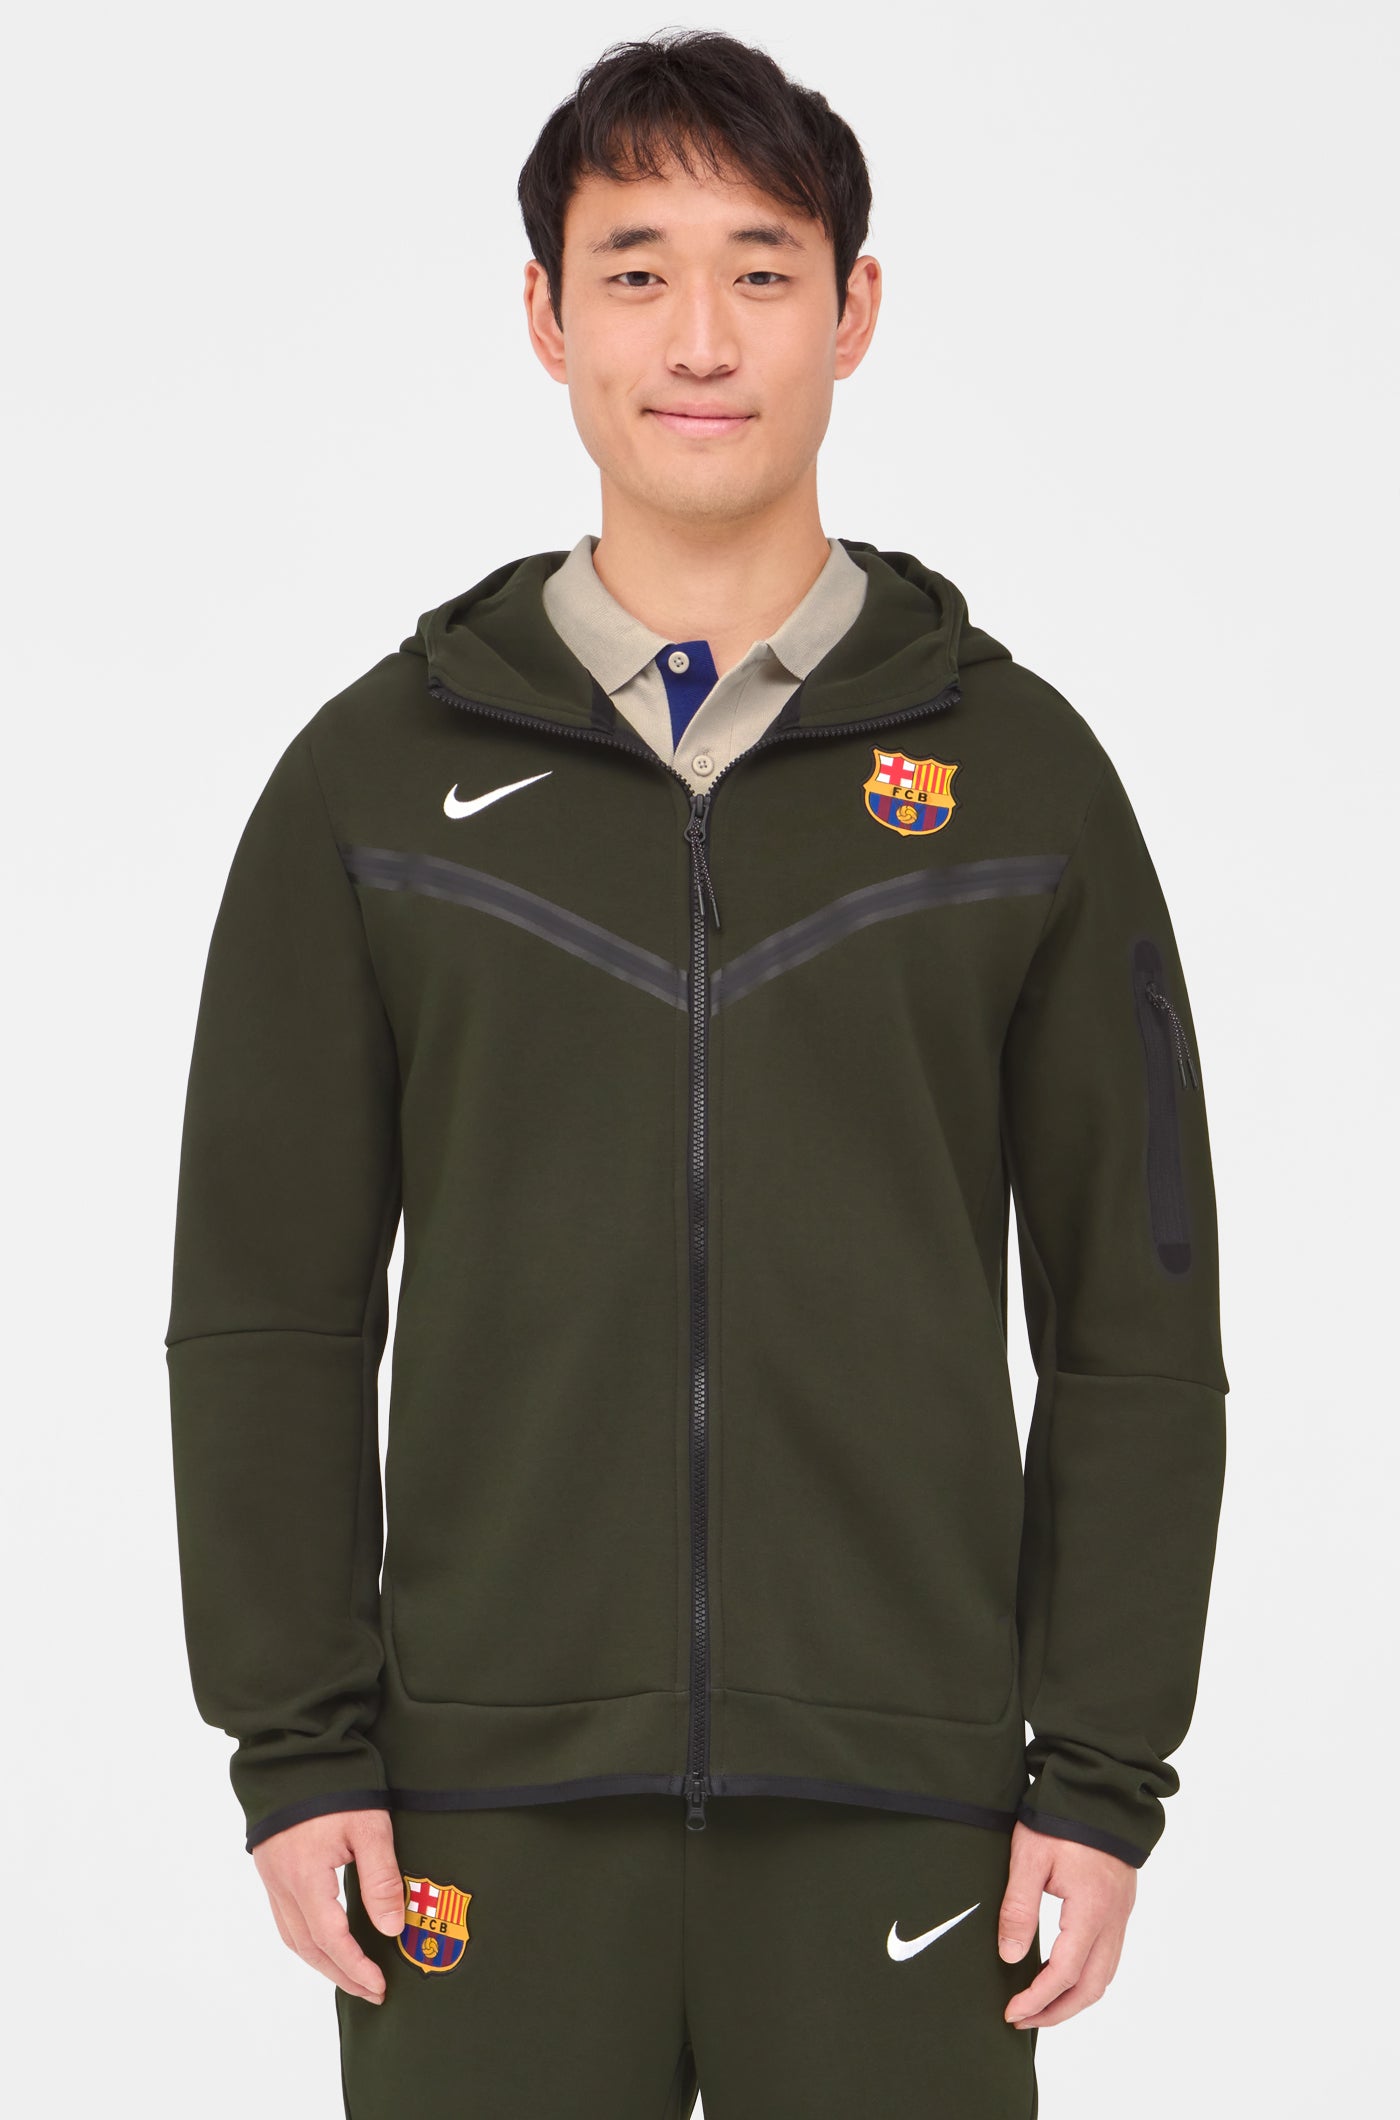 Tech Barça Nike Jacket